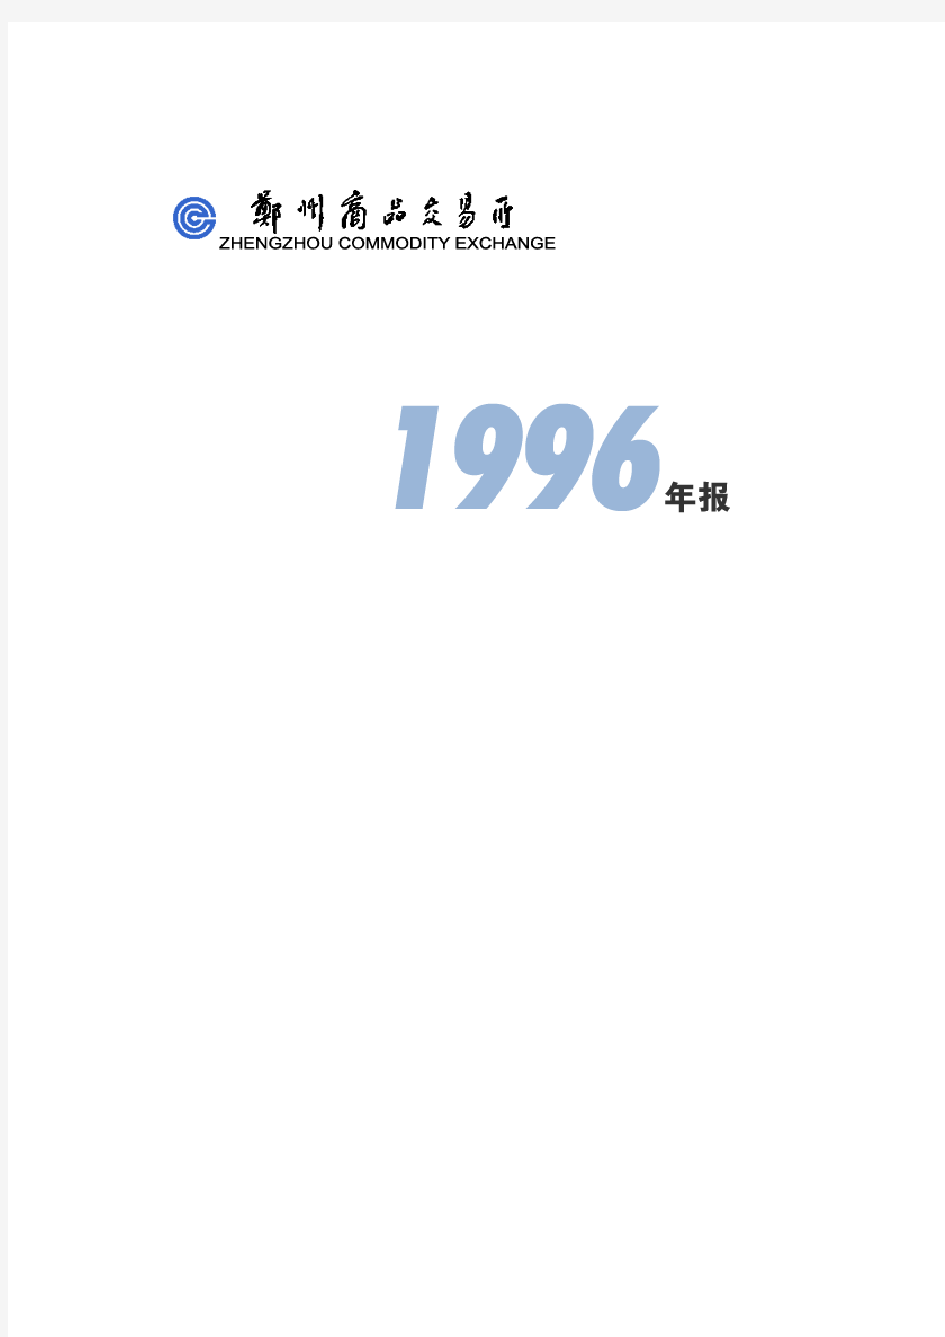 中国郑州商品交易所1996年报